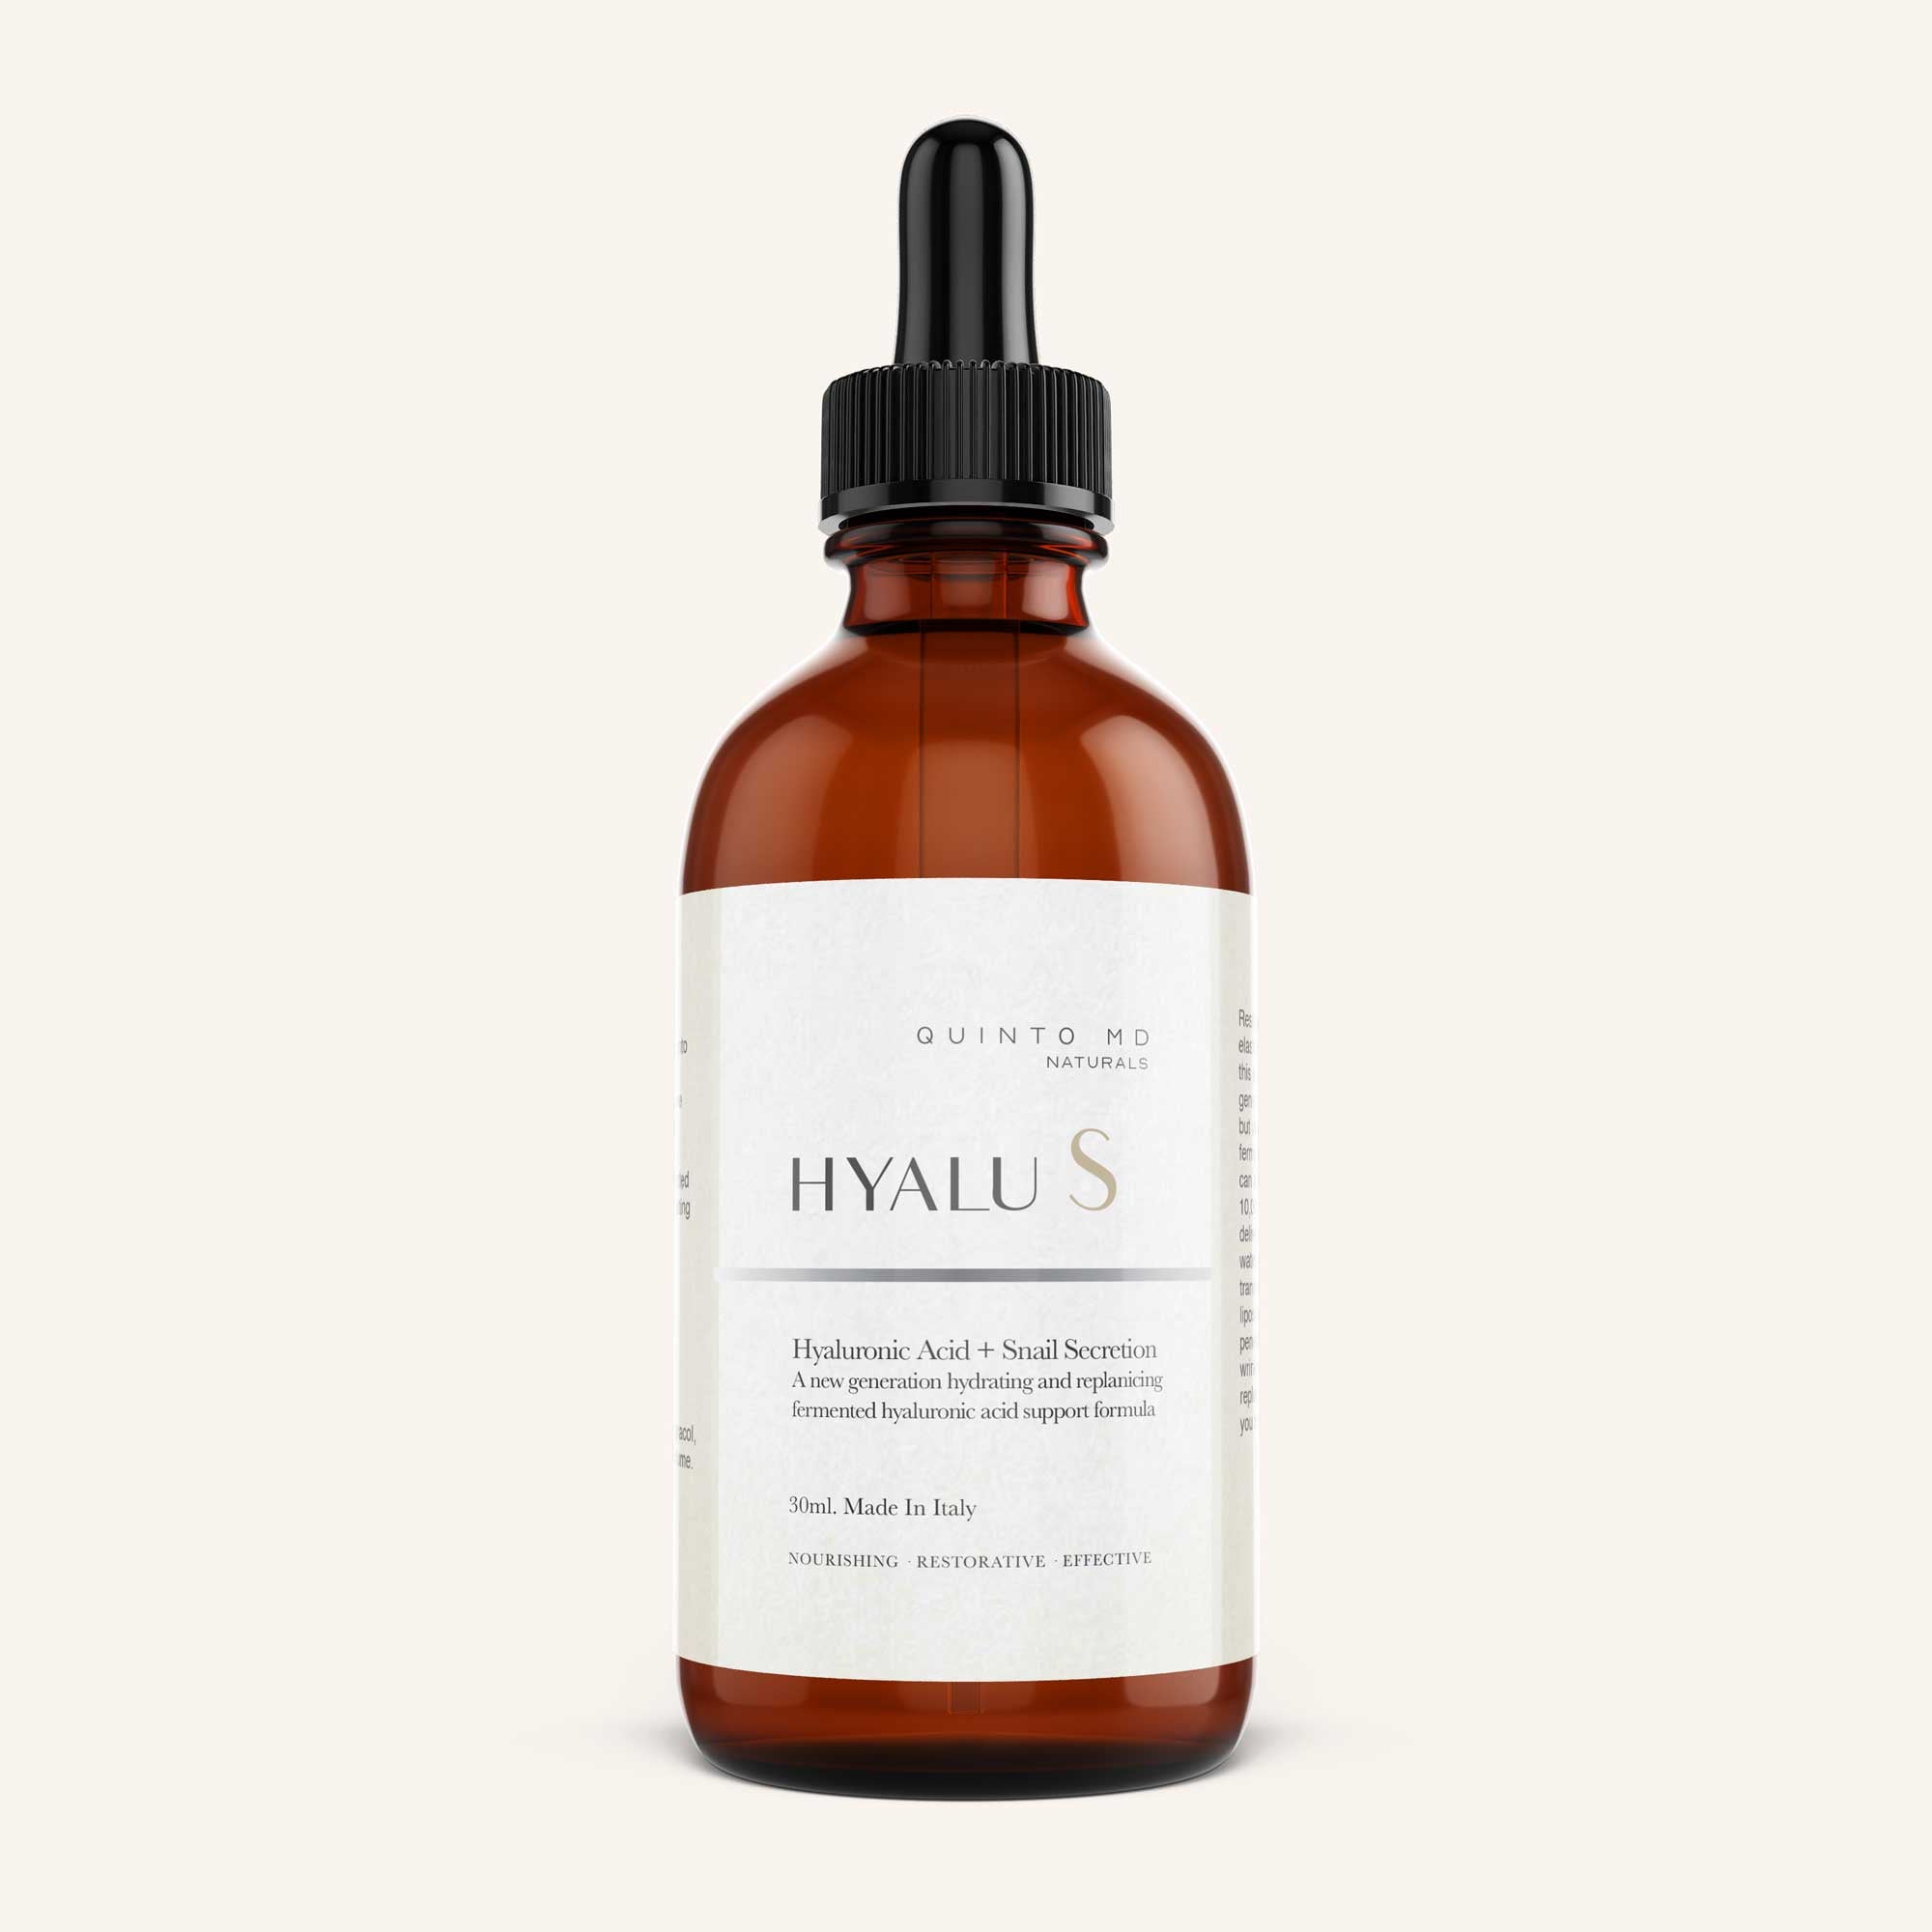 Hyalu S Intensive Repair Hyaluronic Acid Serum + Snail Extract Serum